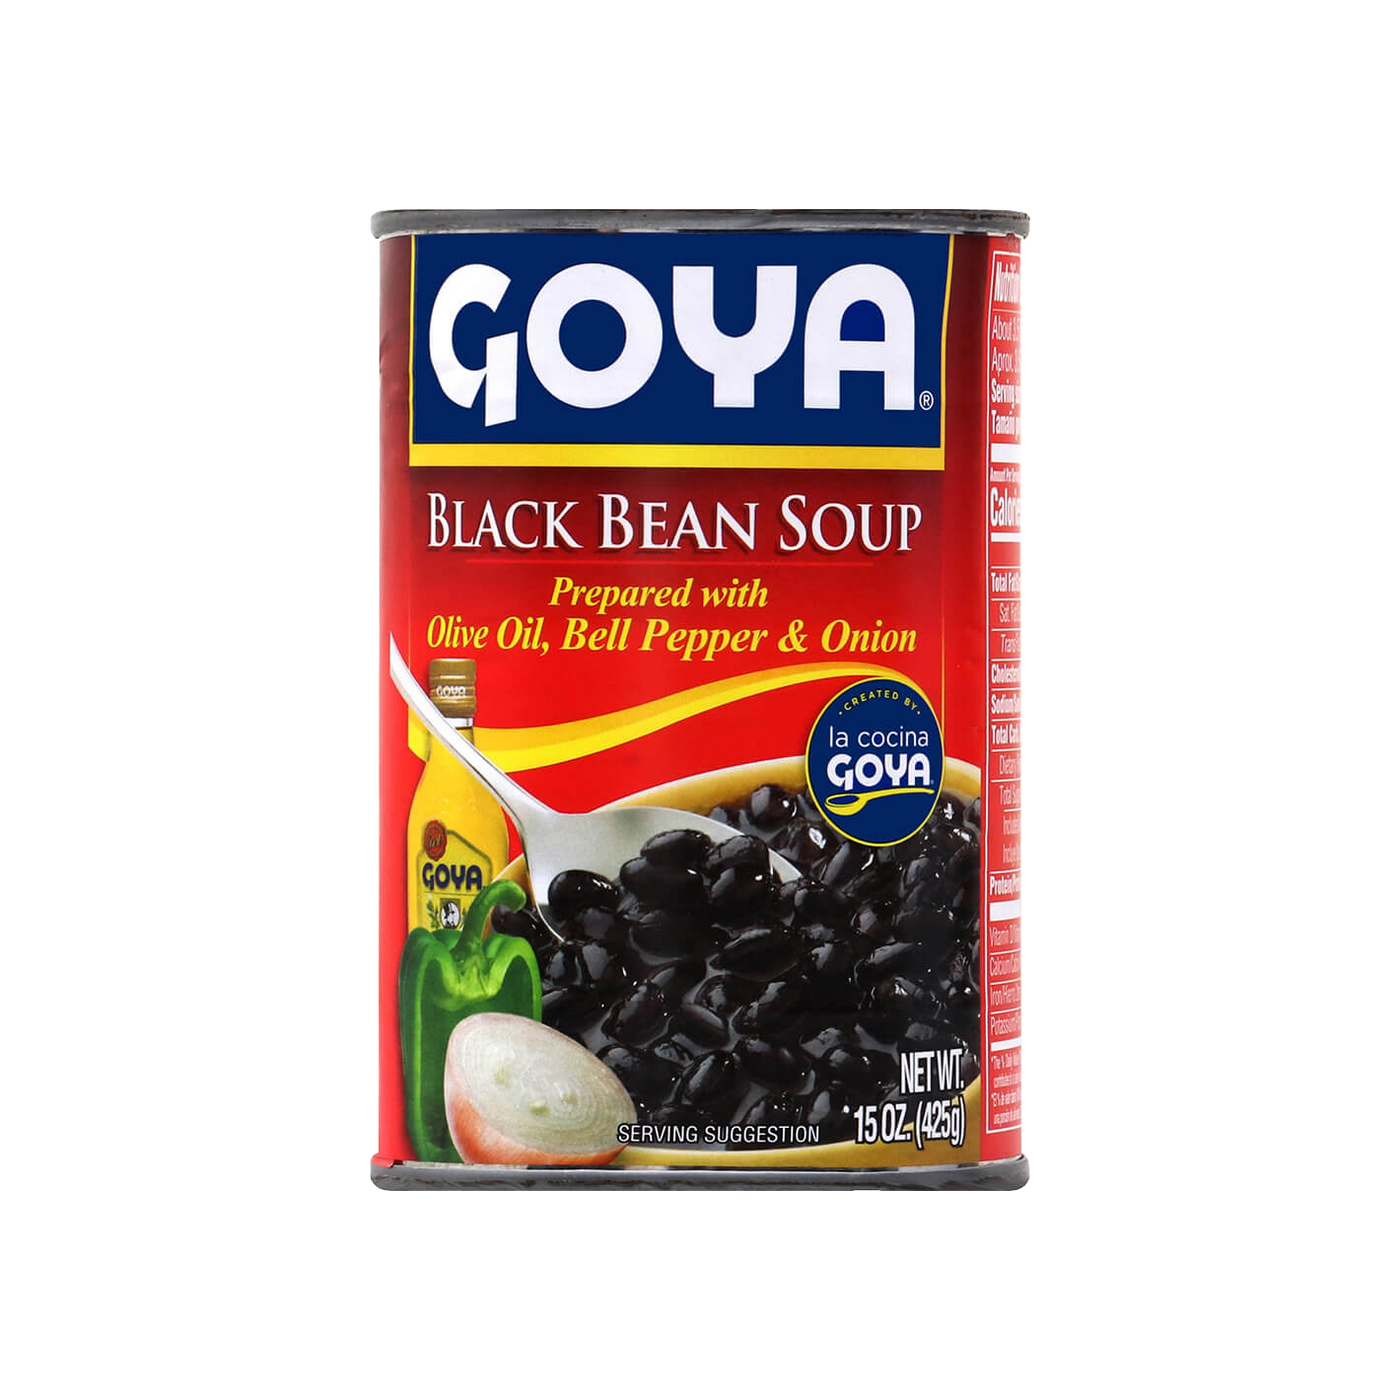   Goya Black Bean Soup